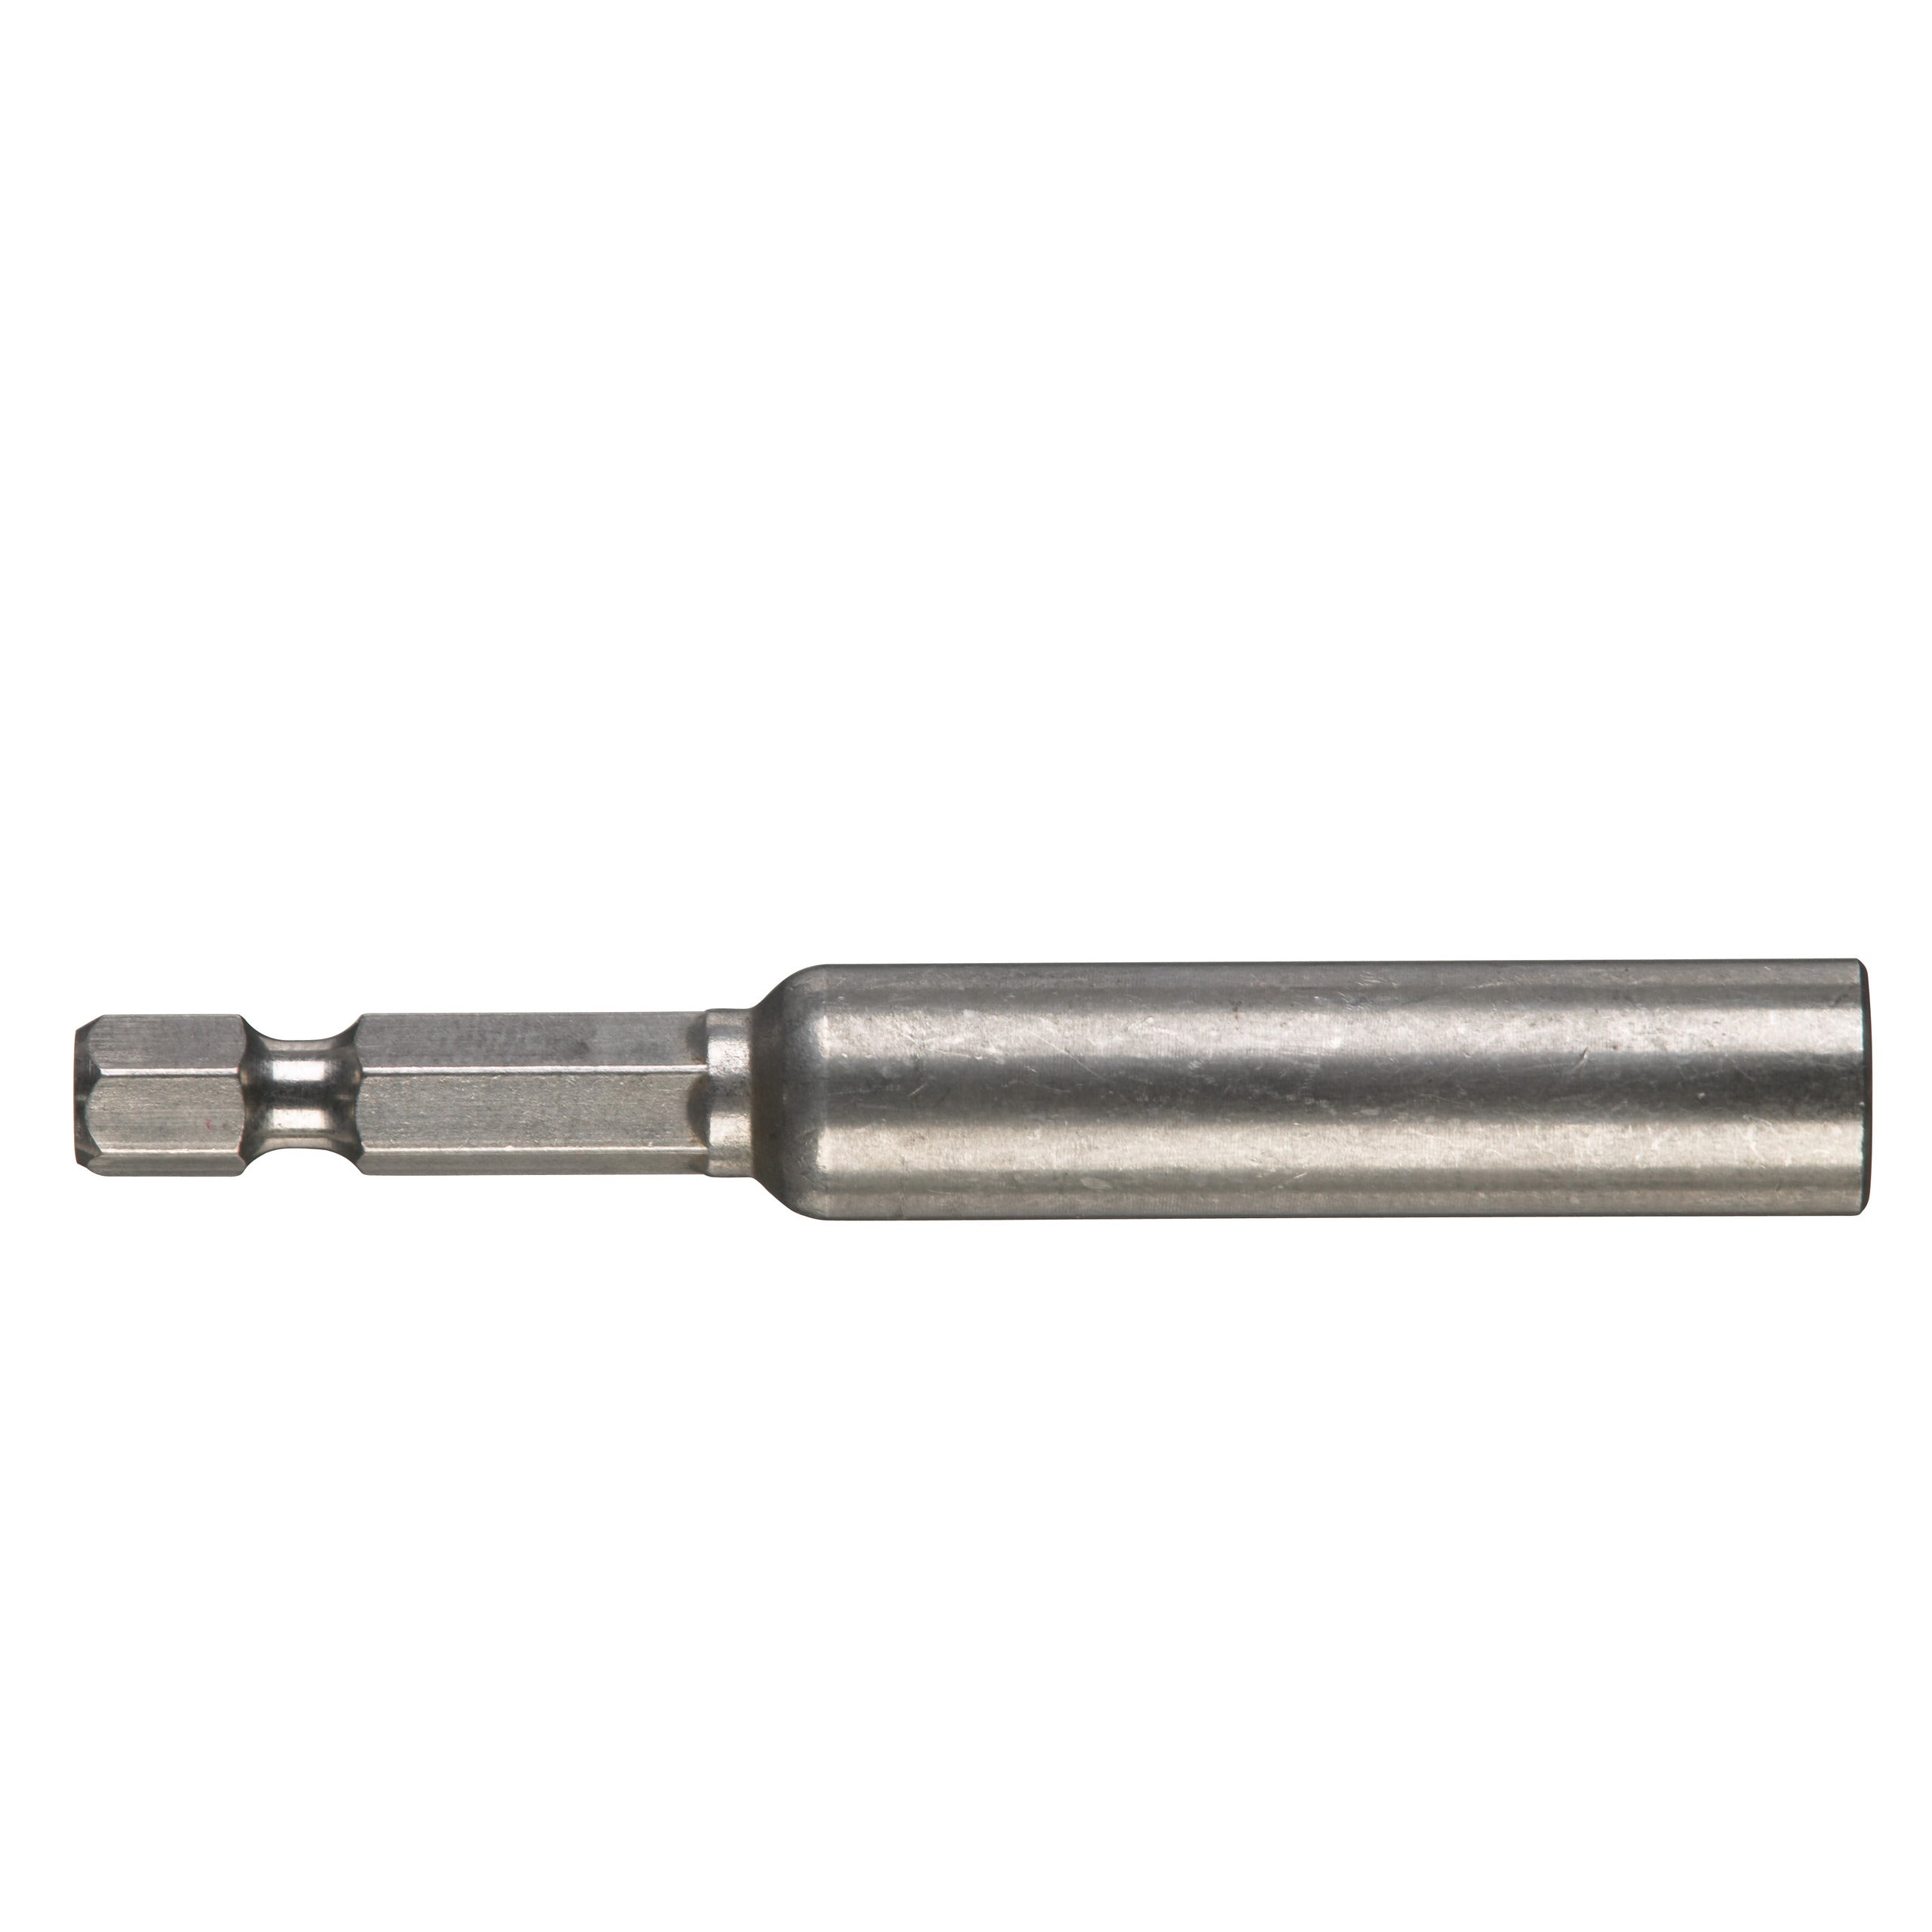 Prelungitor magnetic pentru biți (lungime 76 mm) pentru DWSE 4000 Q, Milwaukee cod 48323065